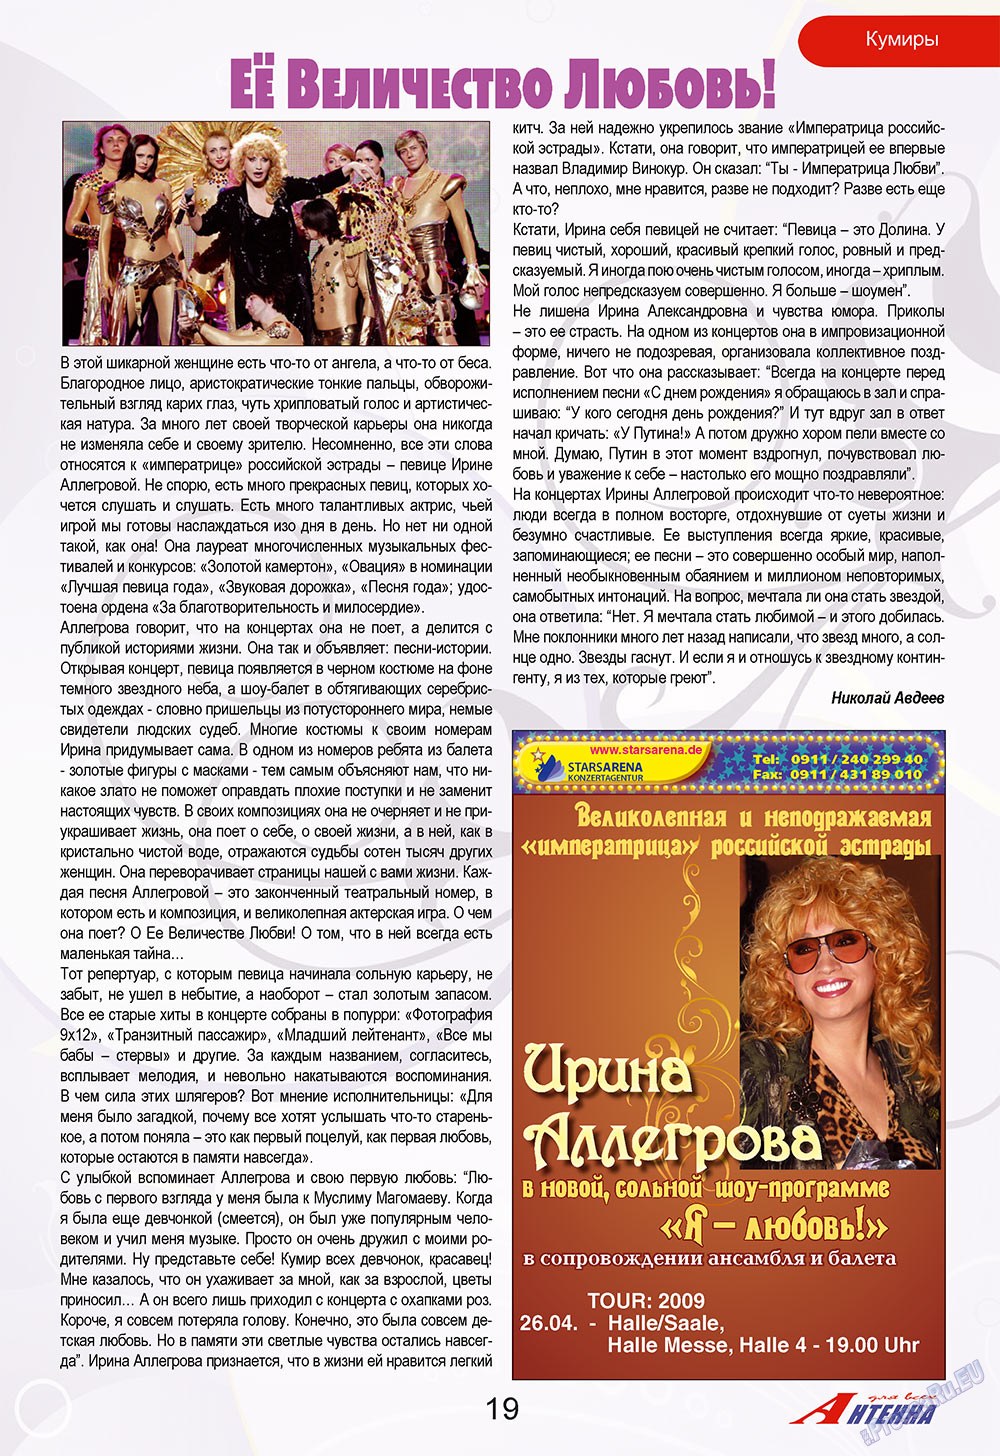 Антенна, журнал. 2009 №4 стр.19